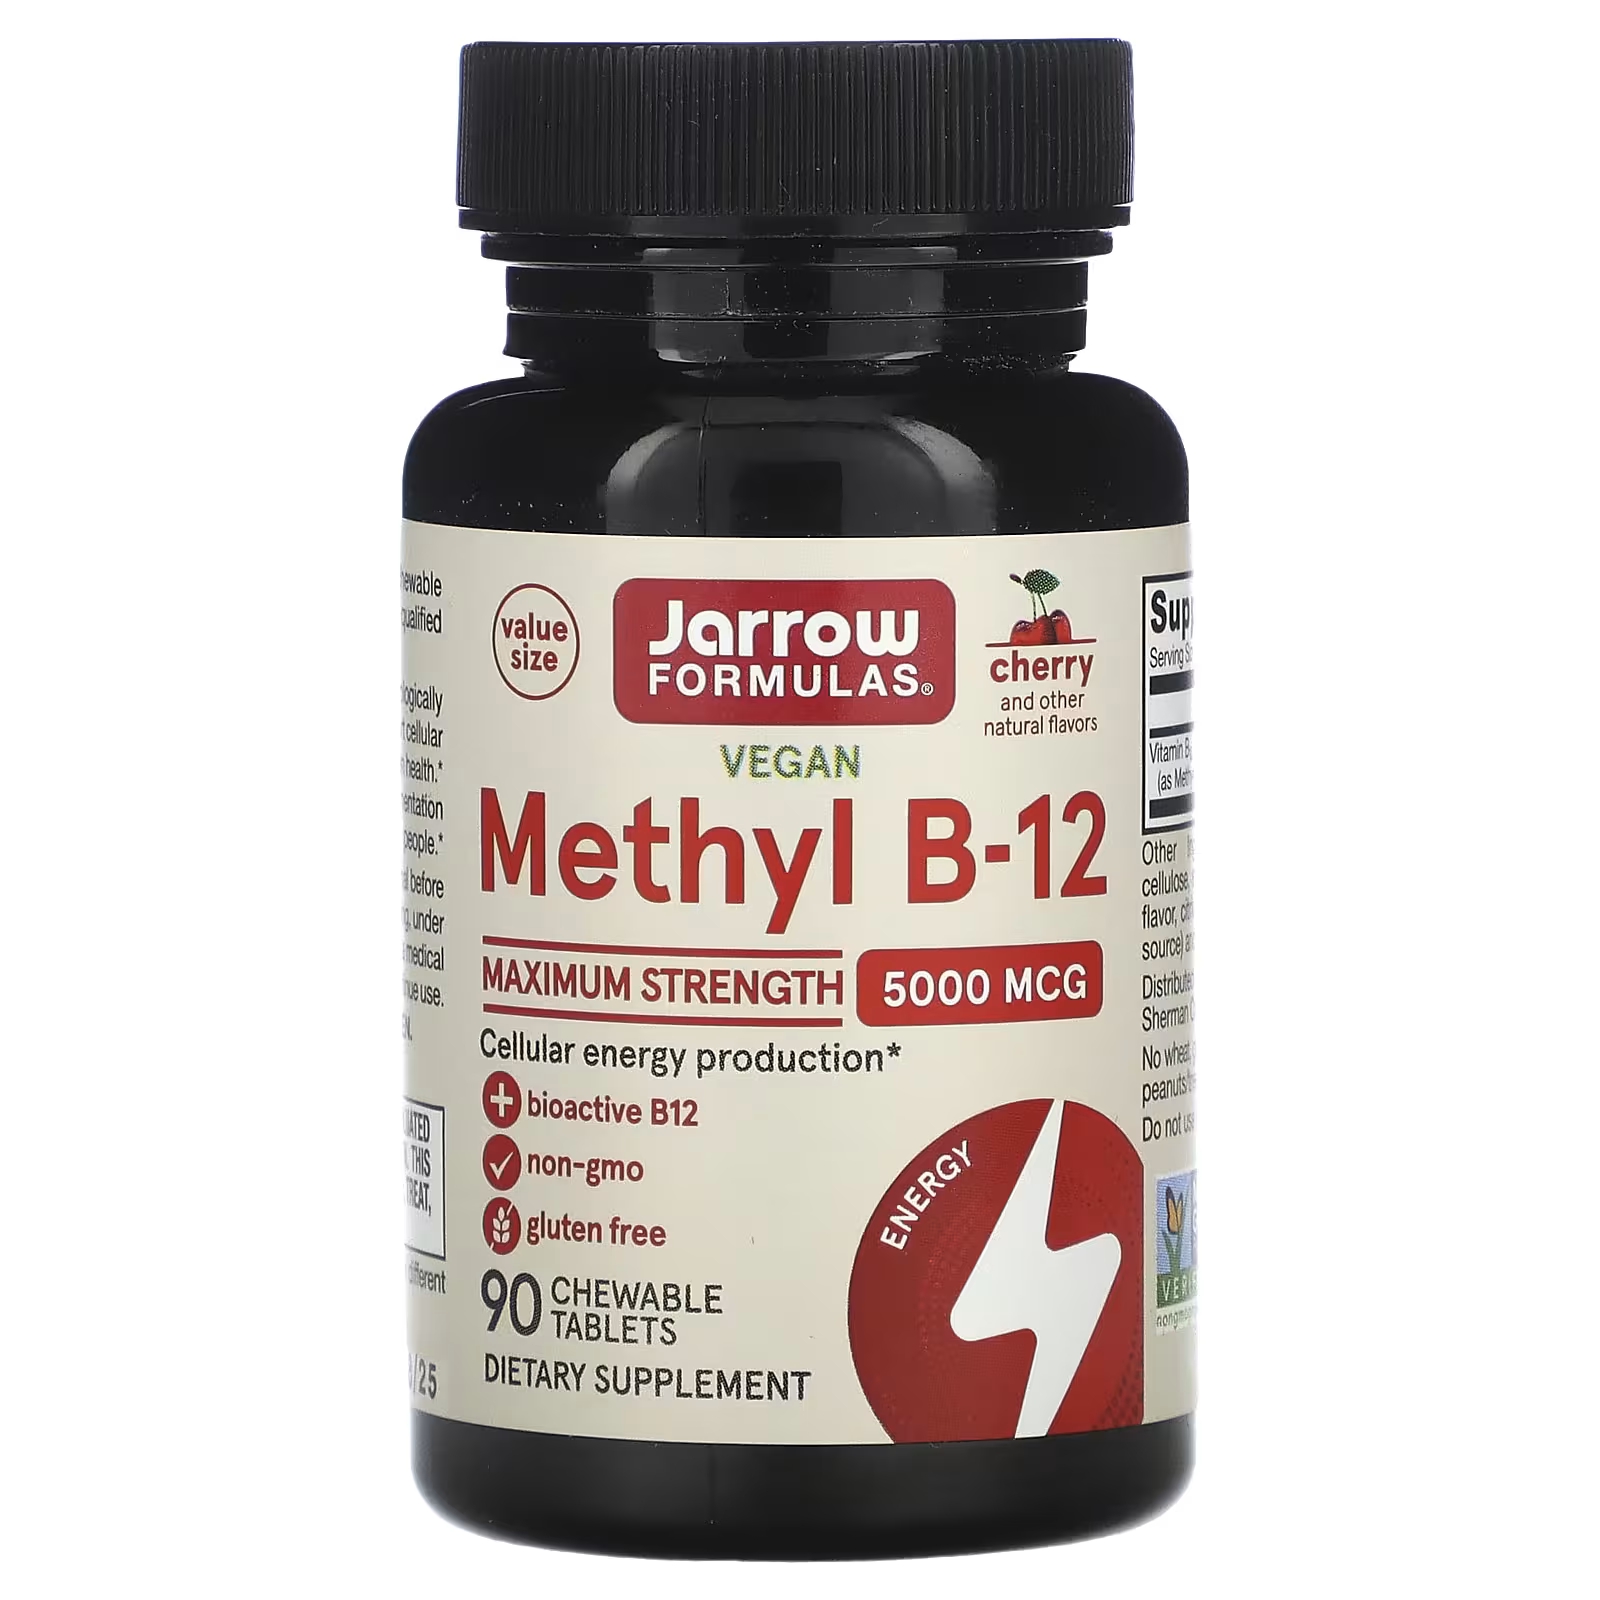 Пищевая добавка Jarrow Formulas Vegan Mmethyl B-12 вишня, 90 жевательных таблеток